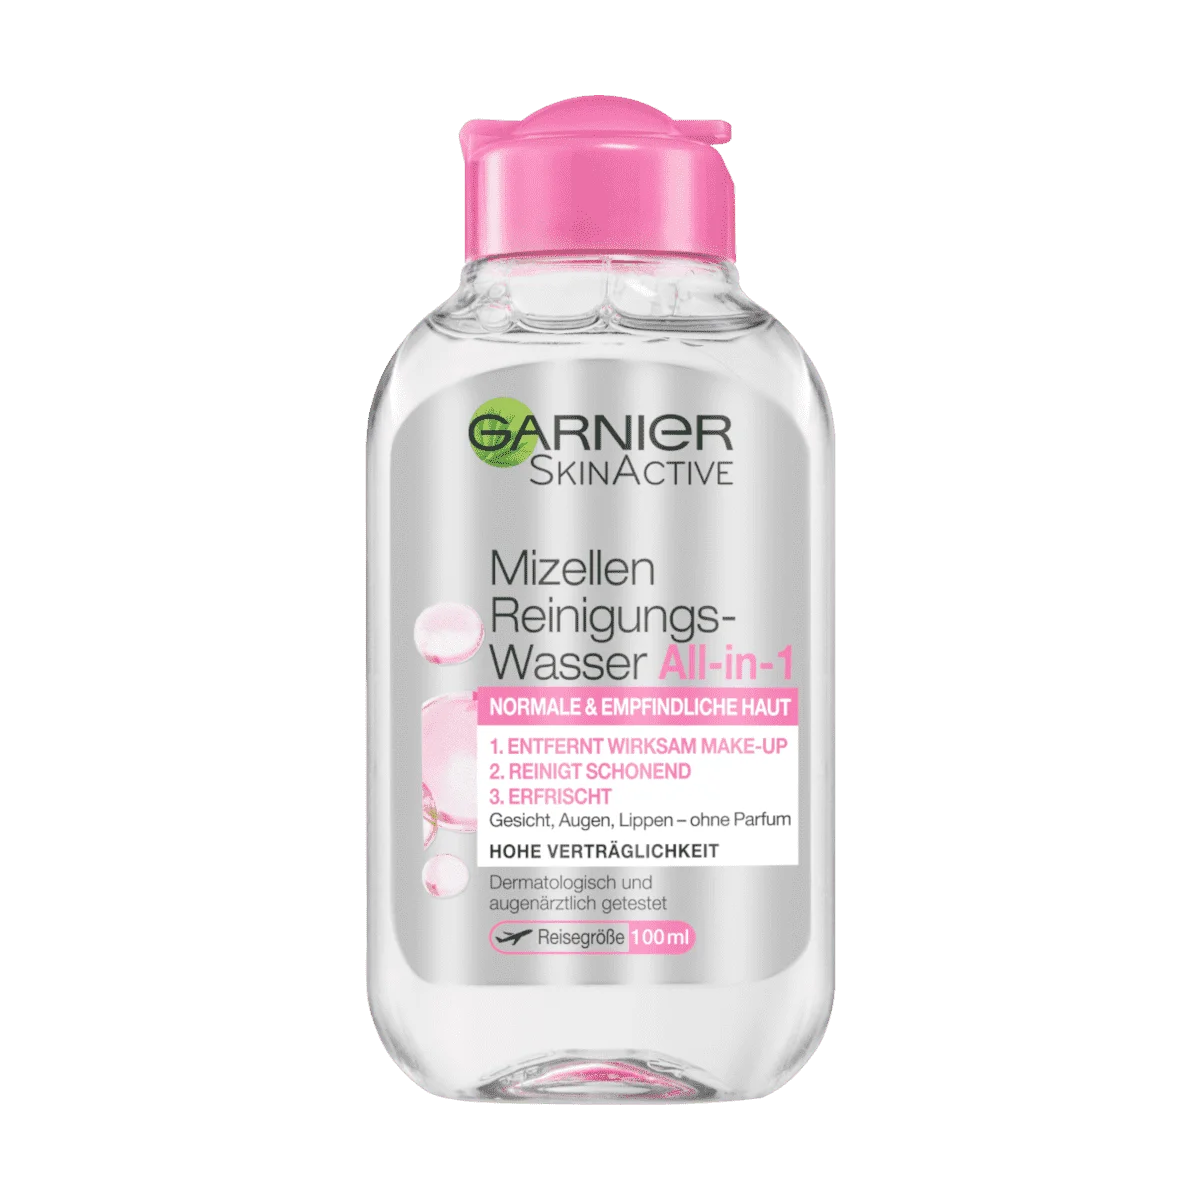 Garnier SkinActive Mizellen Reinigungswasser All-in-1 Empfindliche Haut, 100 ml